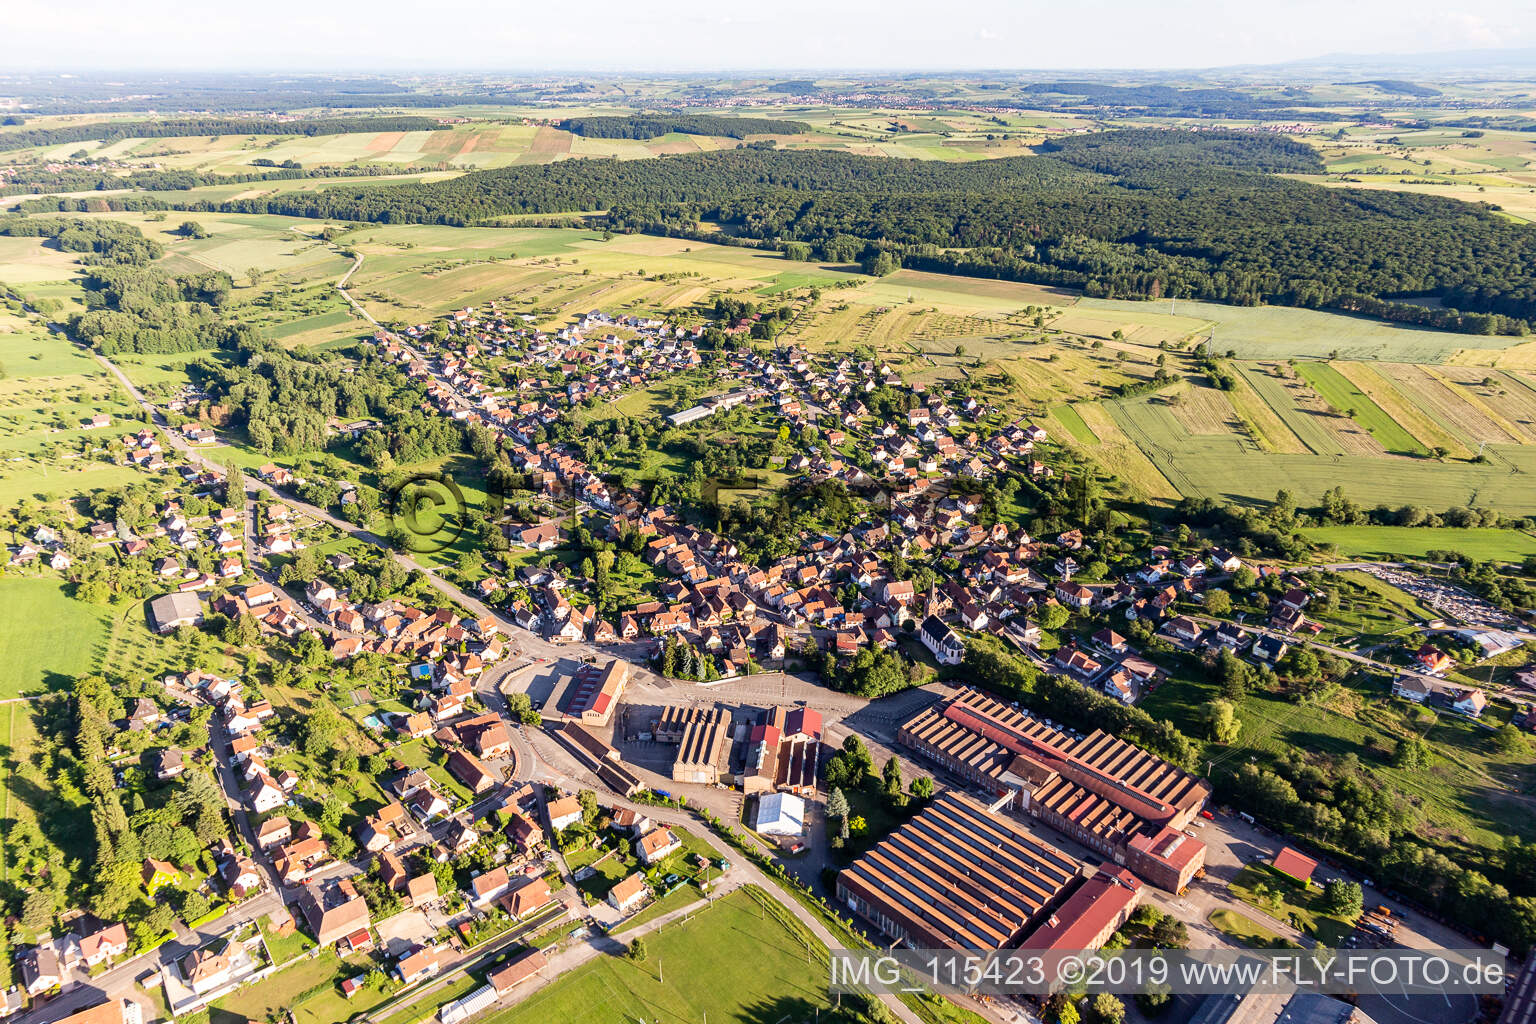 Zinswiller dans le département Bas Rhin, France vu d'un drone